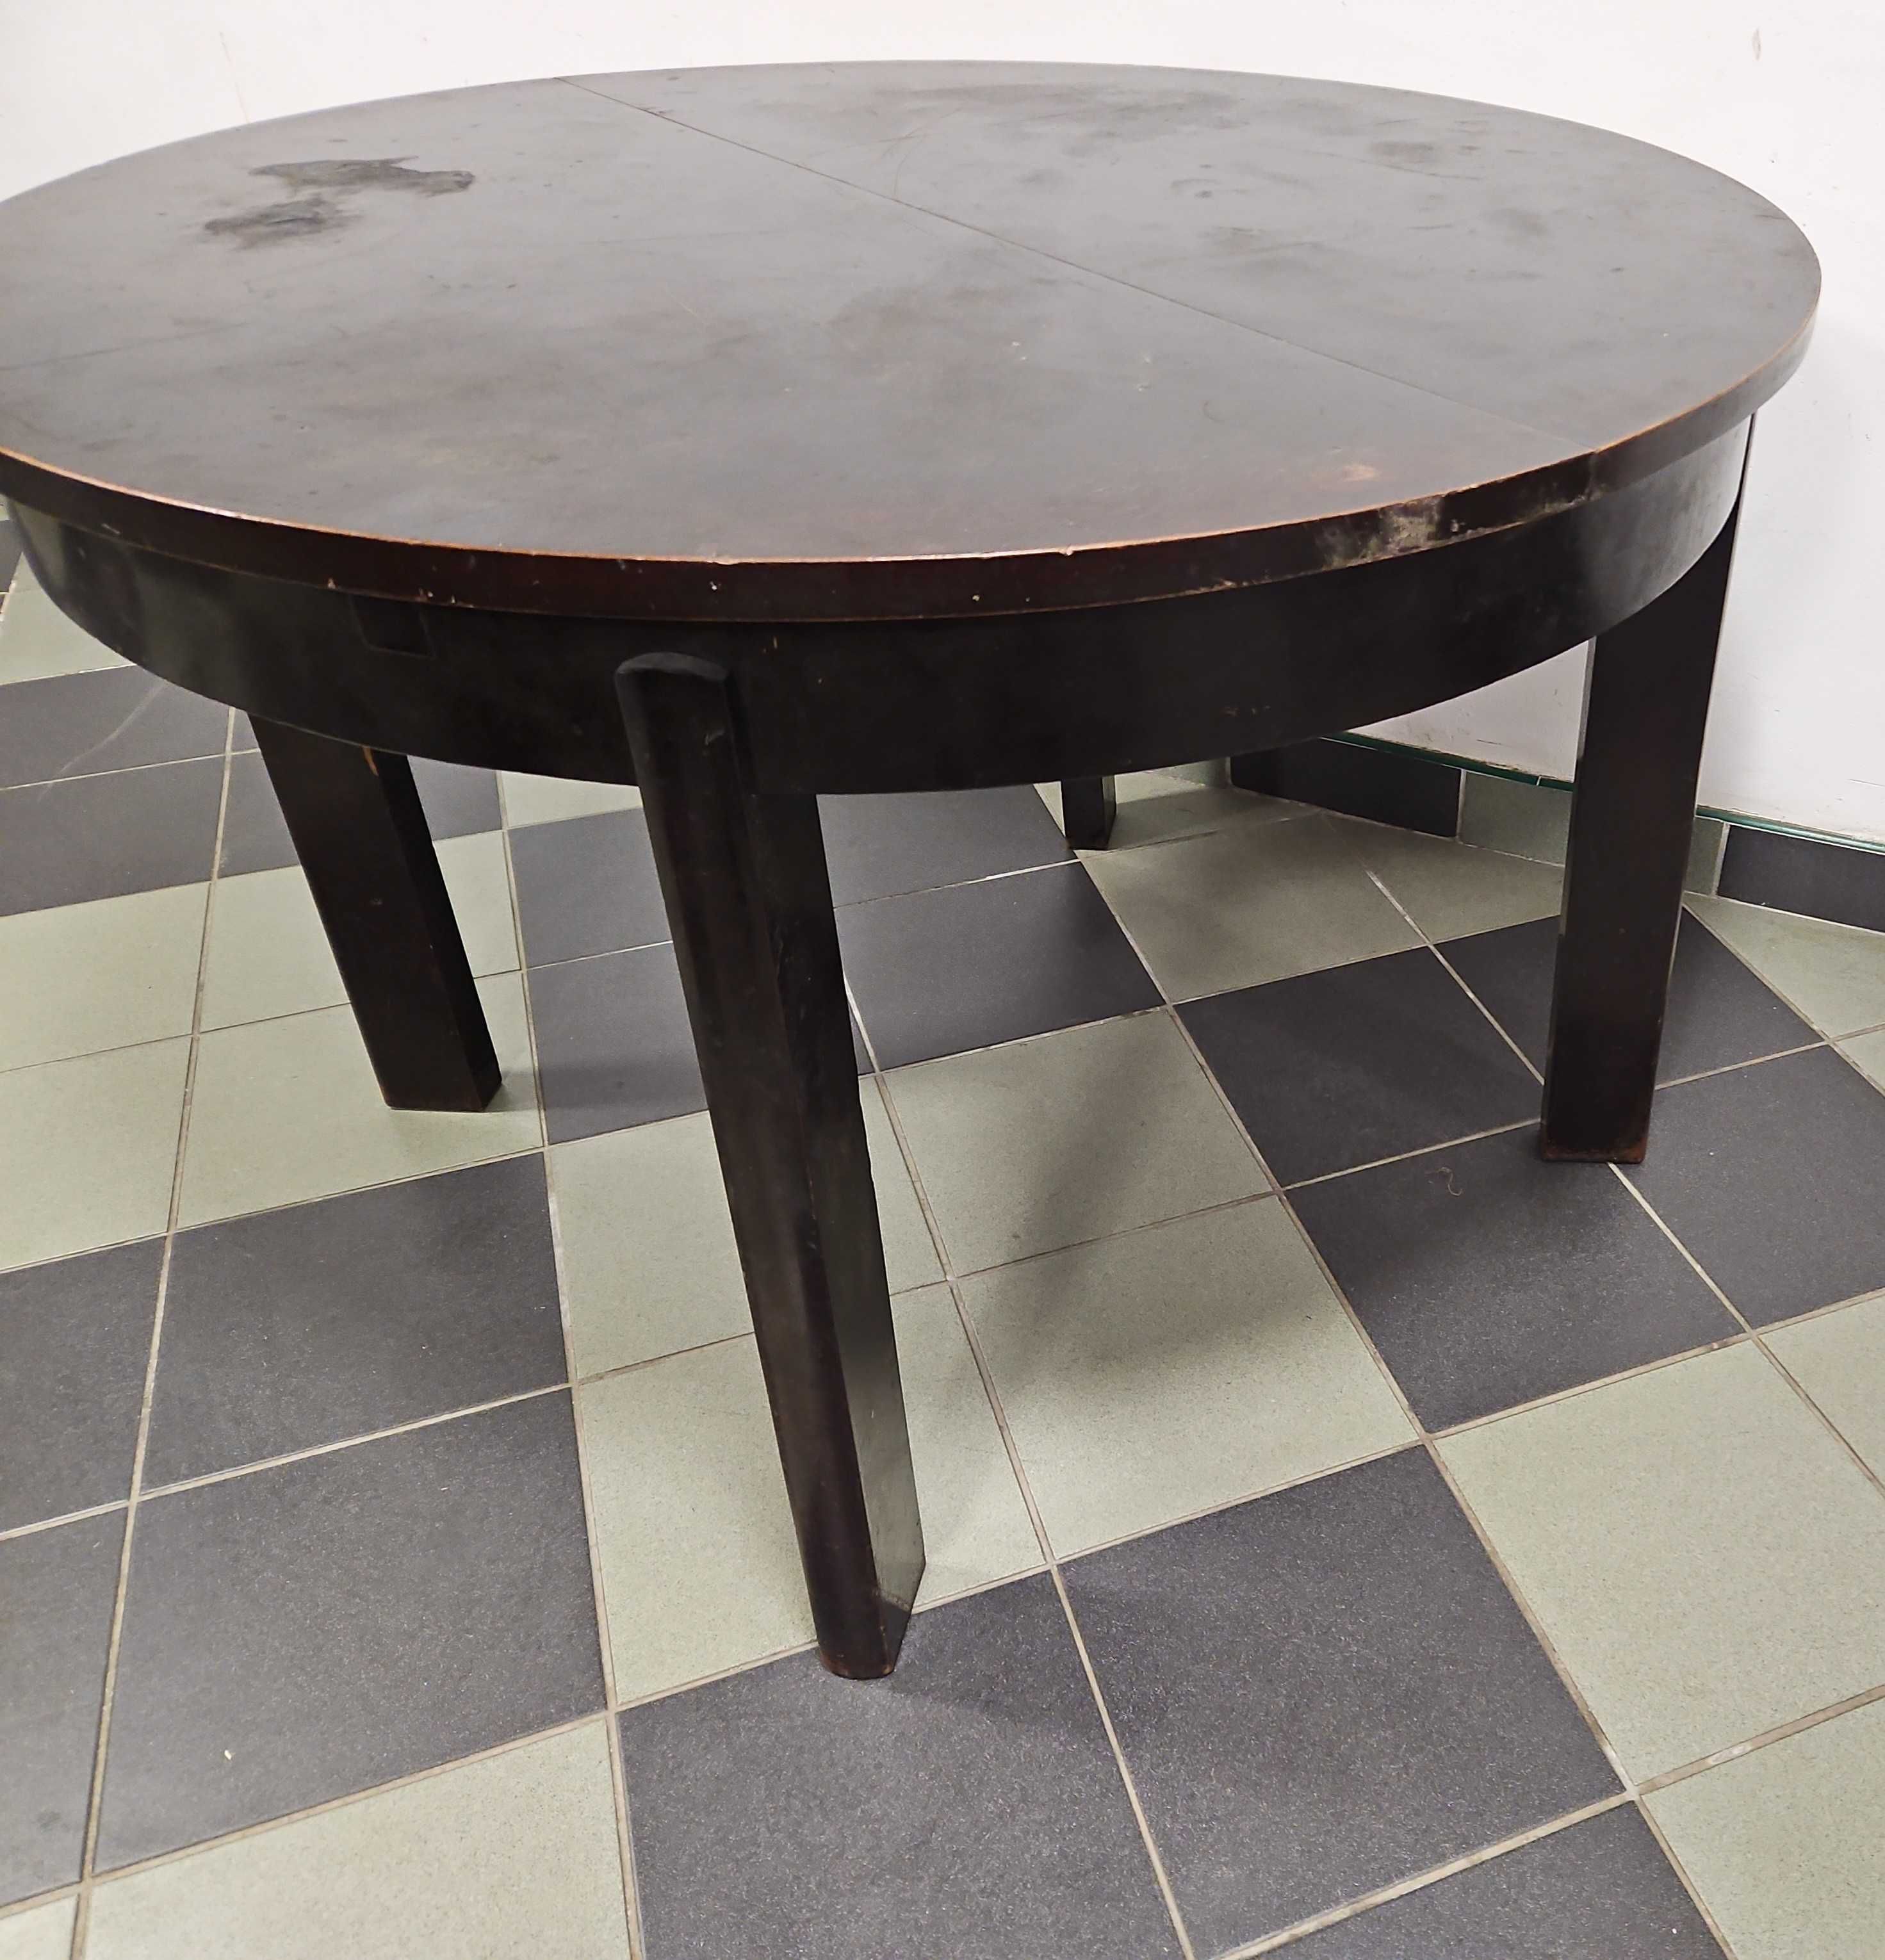 Okrągły stół rozkładany lata 50-te.